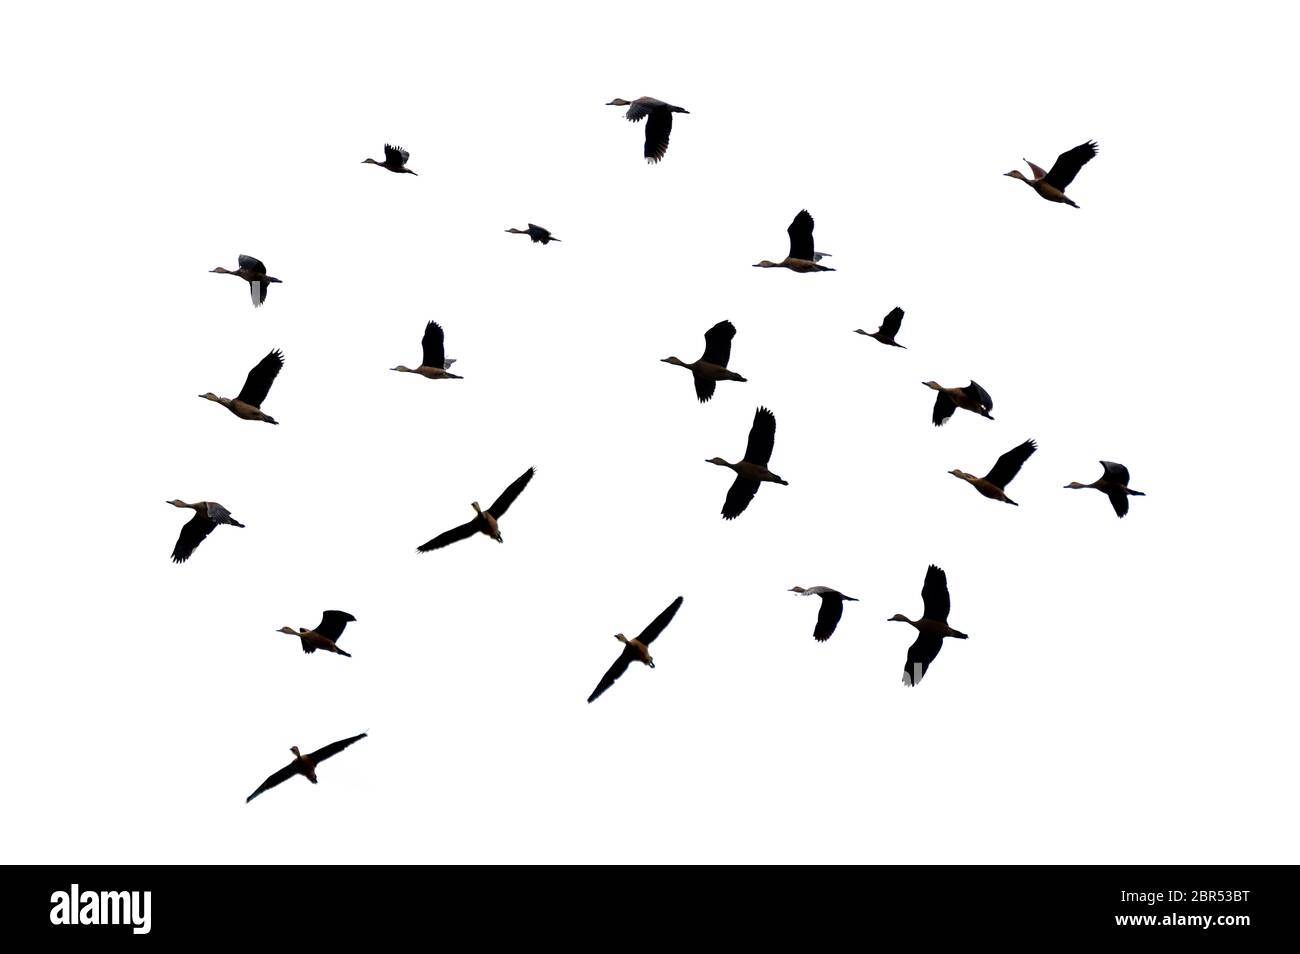 Groupe d'oiseaux volant sur un isolat blanc Banque D'Images